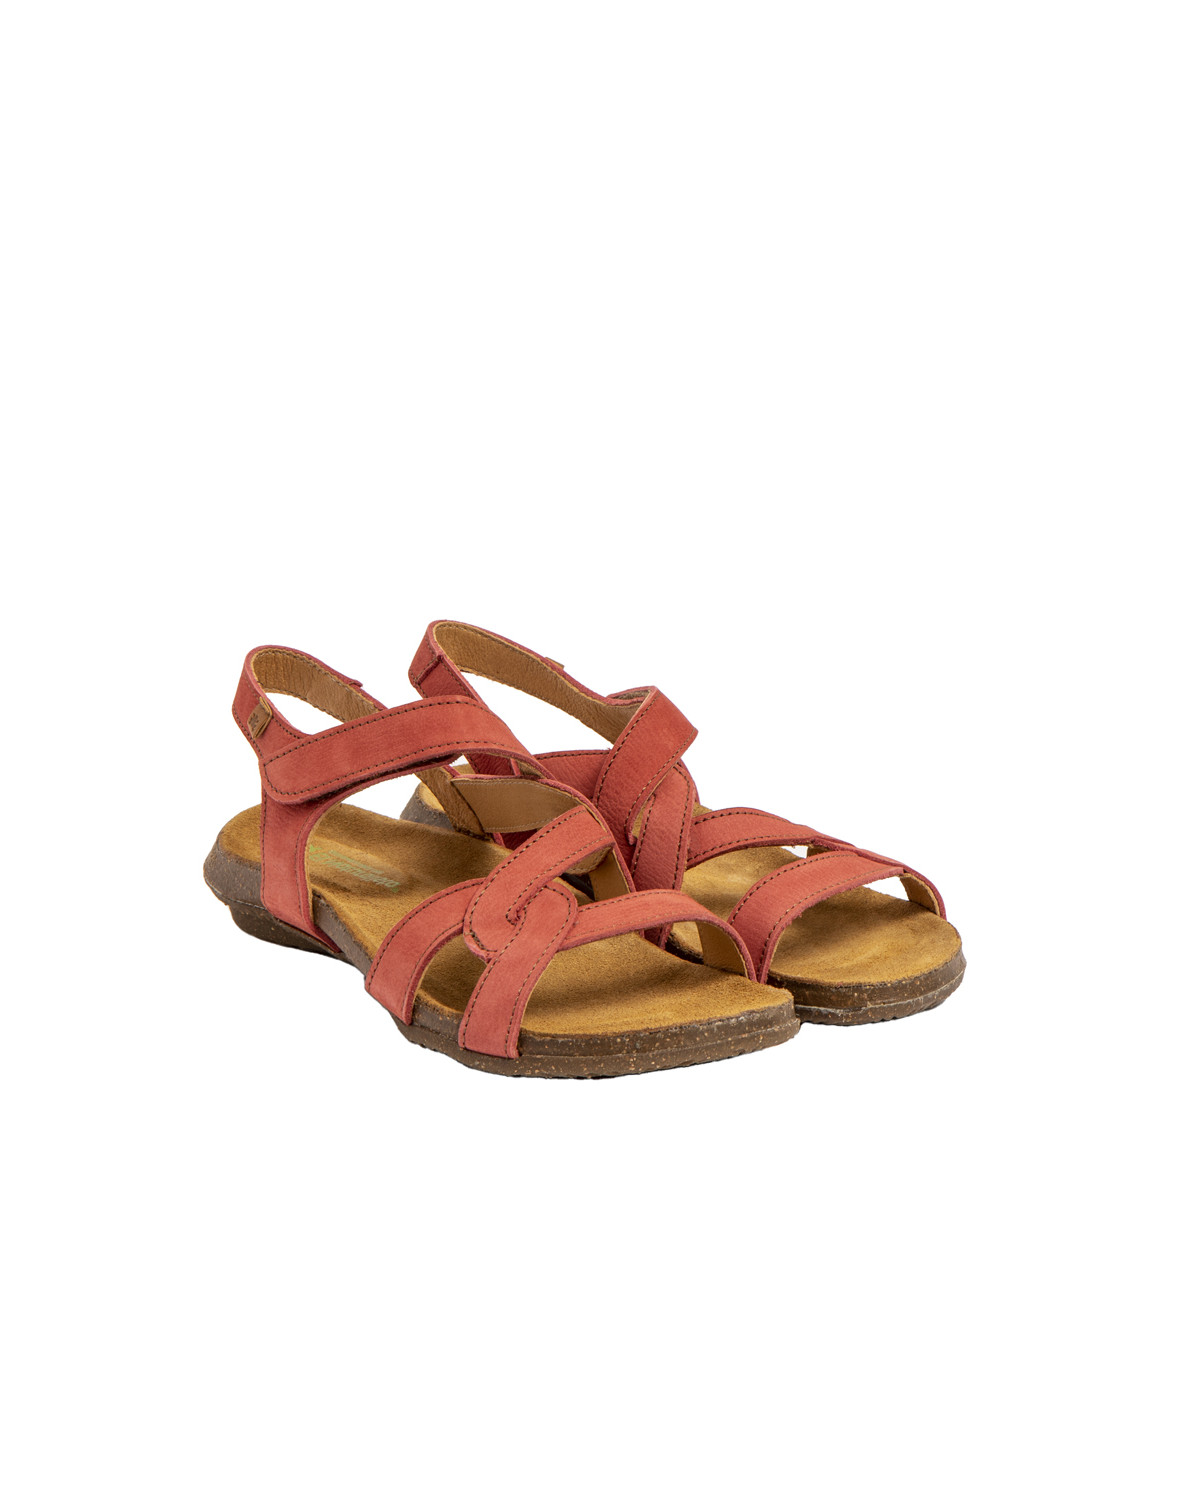 Sandales confortables plates à lanières entrelacées - Rose - El naturalista